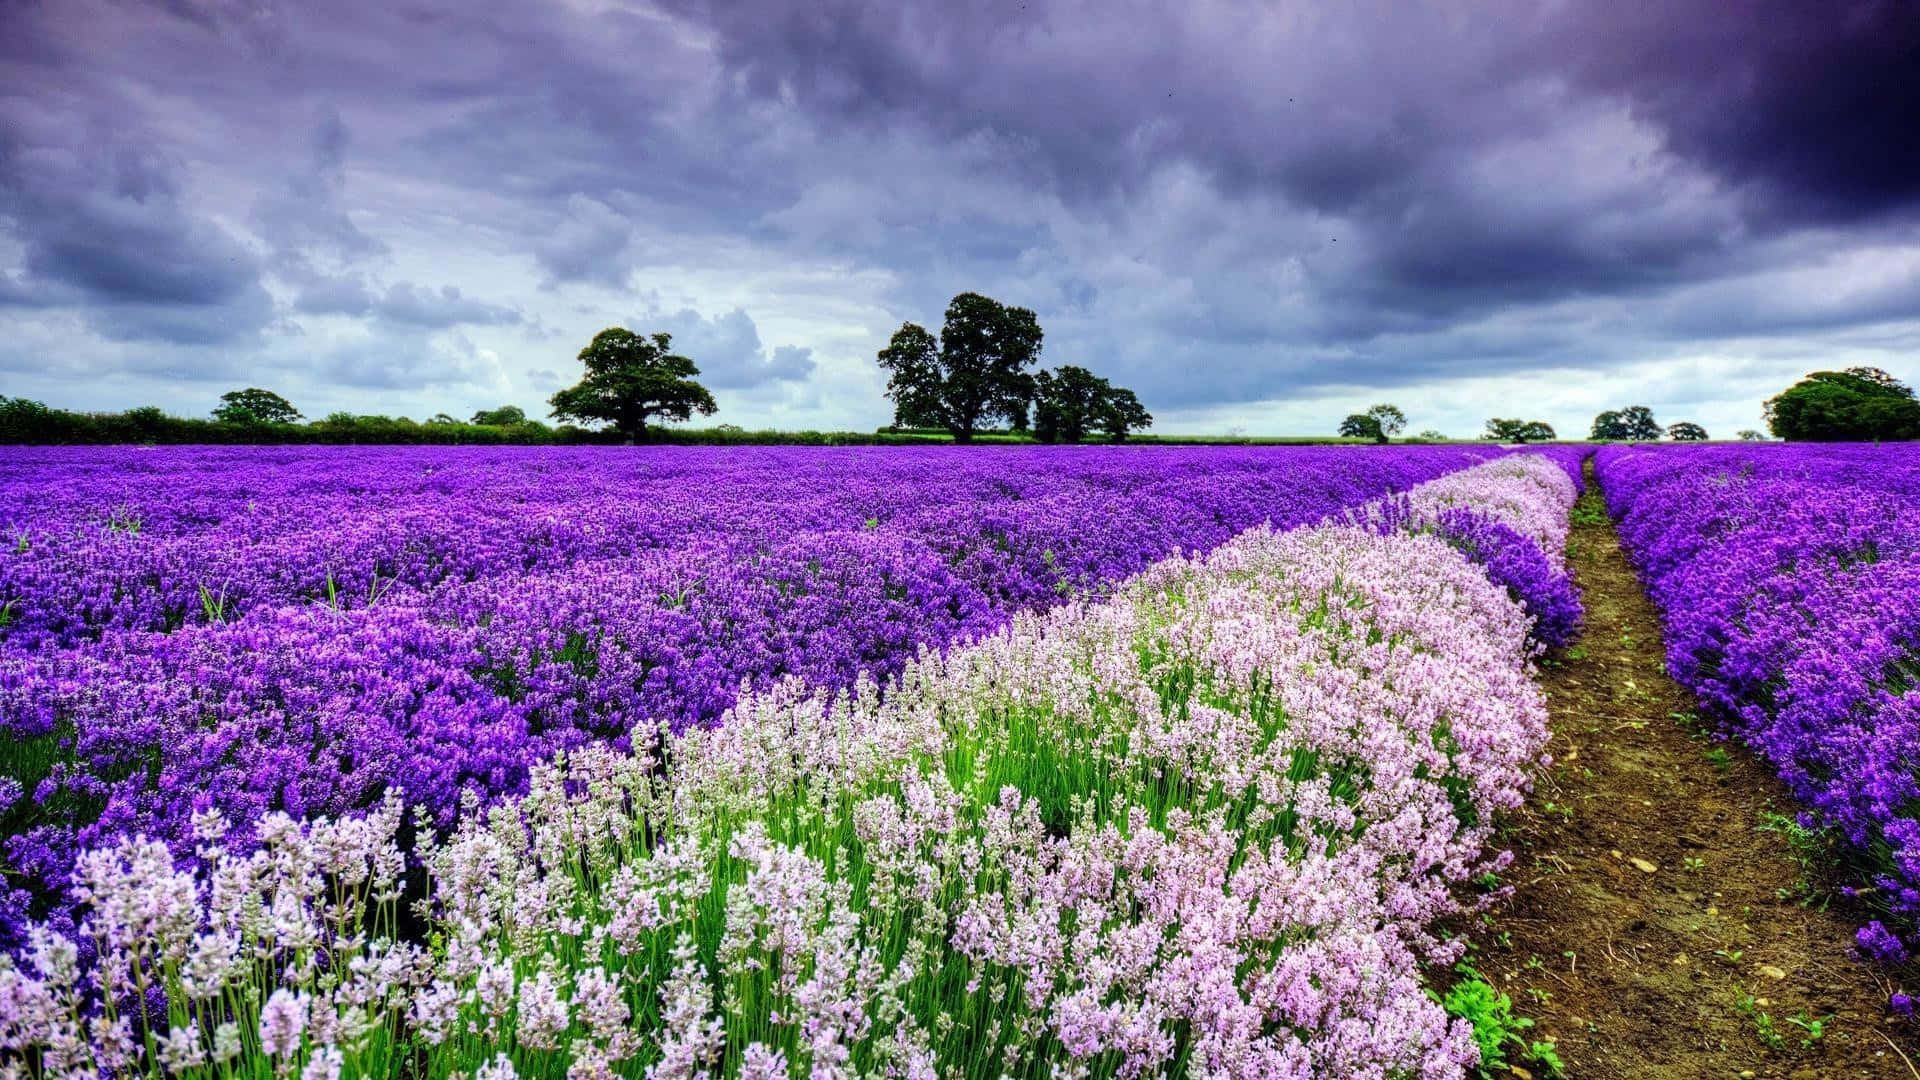 Fondode Pantalla Púrpura De Campo Con Flores Bonitas De Primavera Y Cielo Nublado. Fondo de pantalla